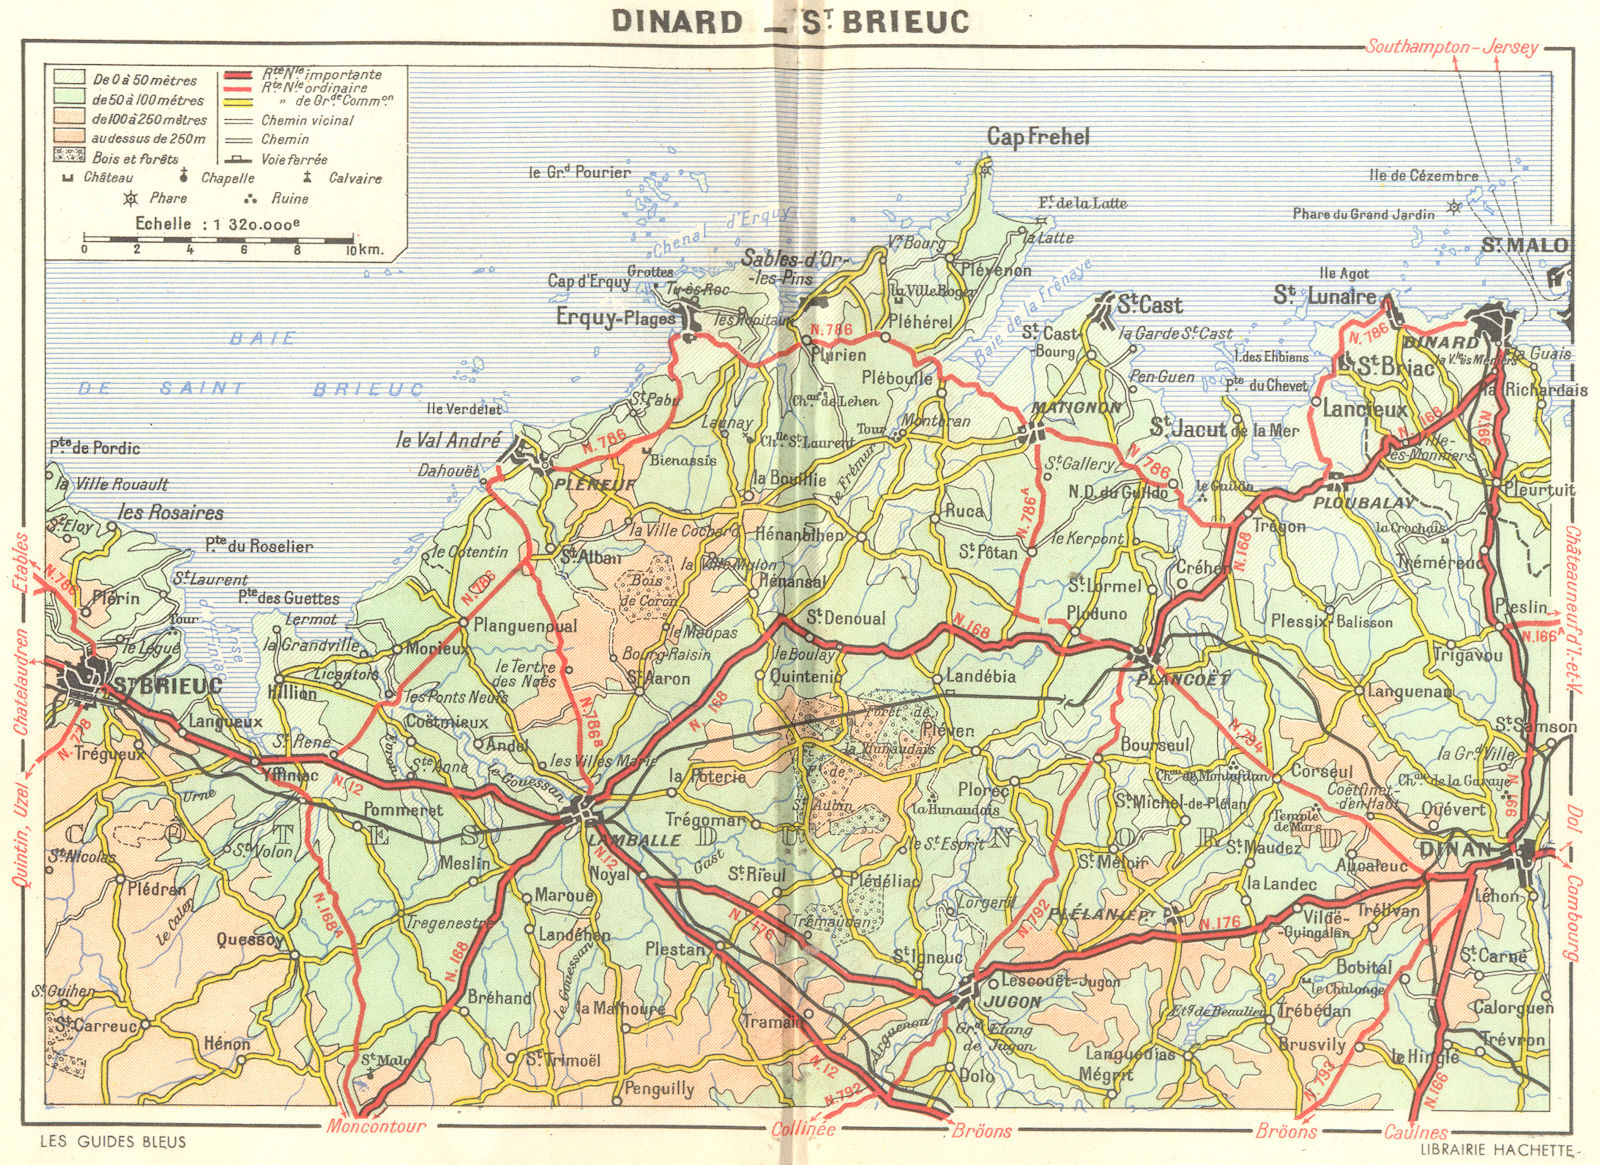 ILLE-VILAINE. De Dinard a St-Brieuc 1948 old vintage map plan chart